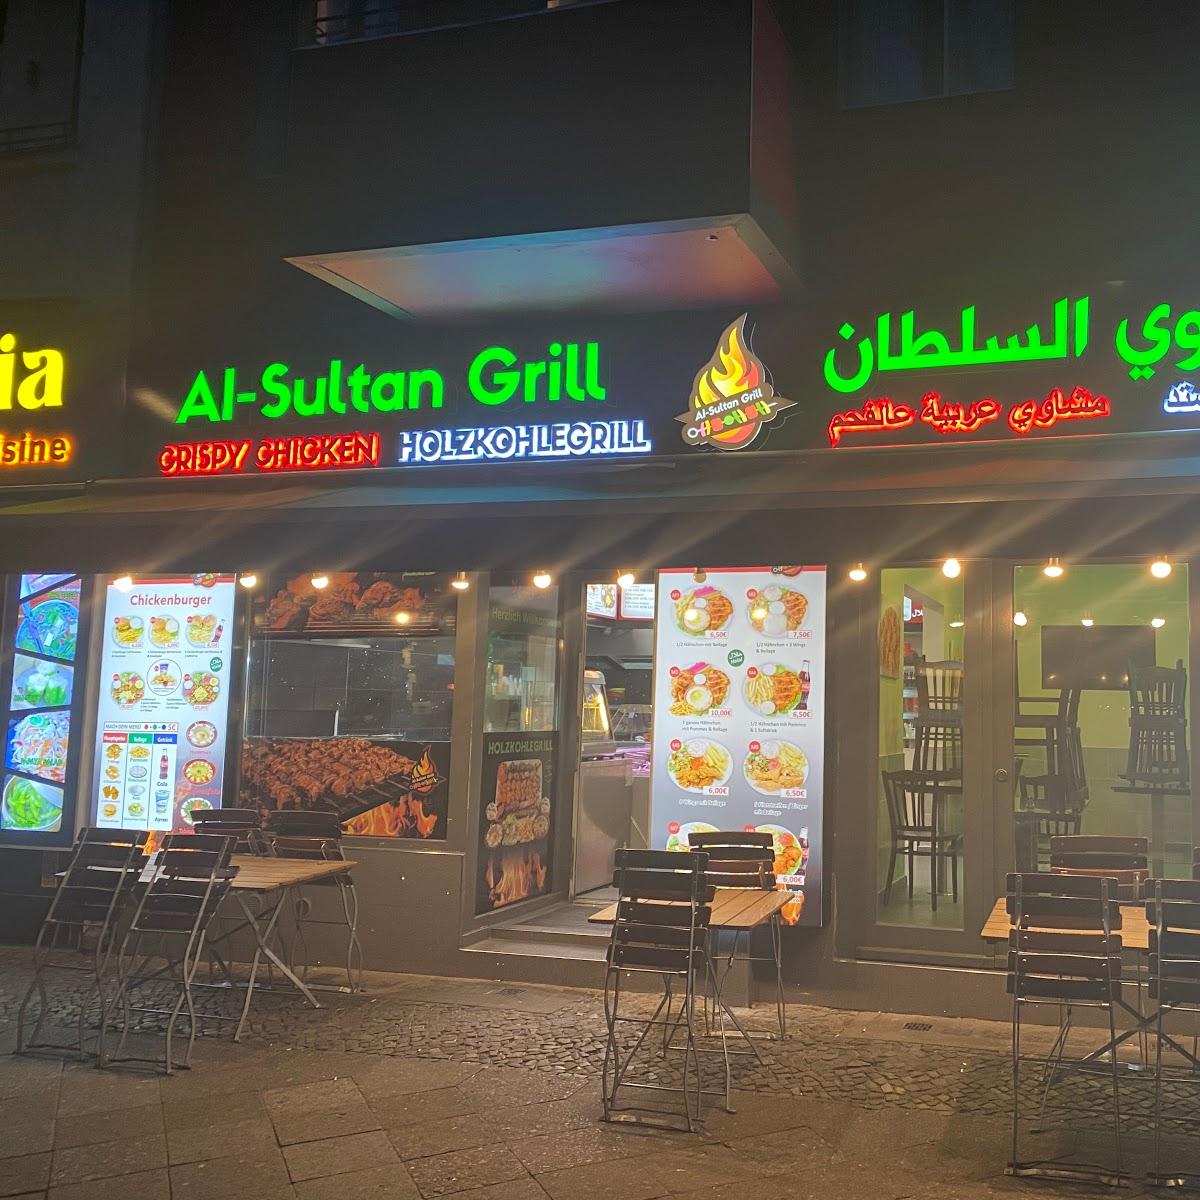 Restaurant "Alsultan grill" in Berlin